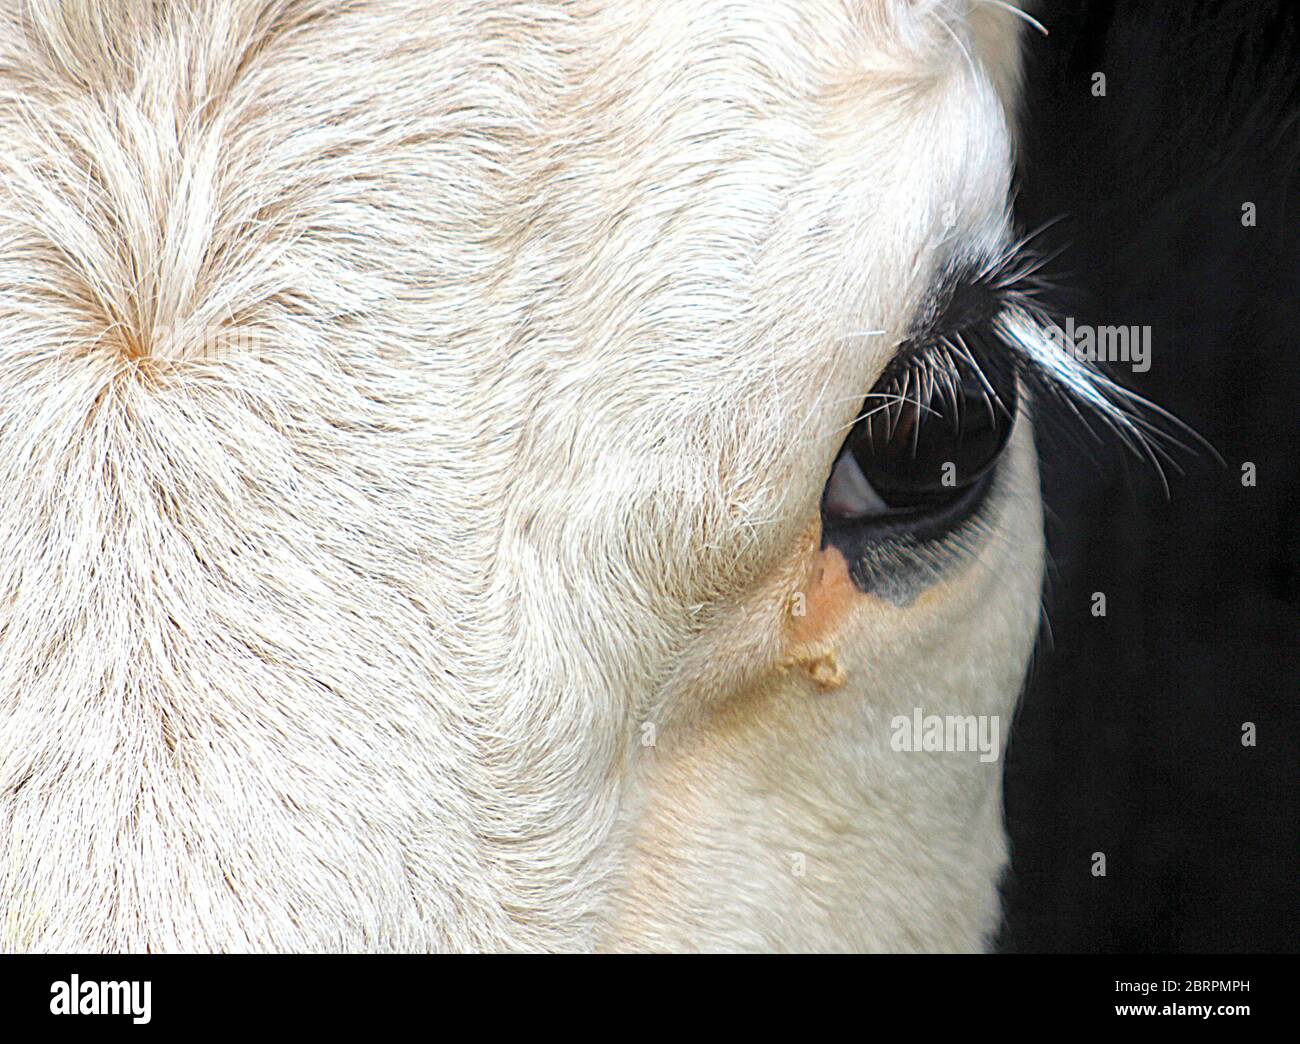 Eye of cow Stock Photo